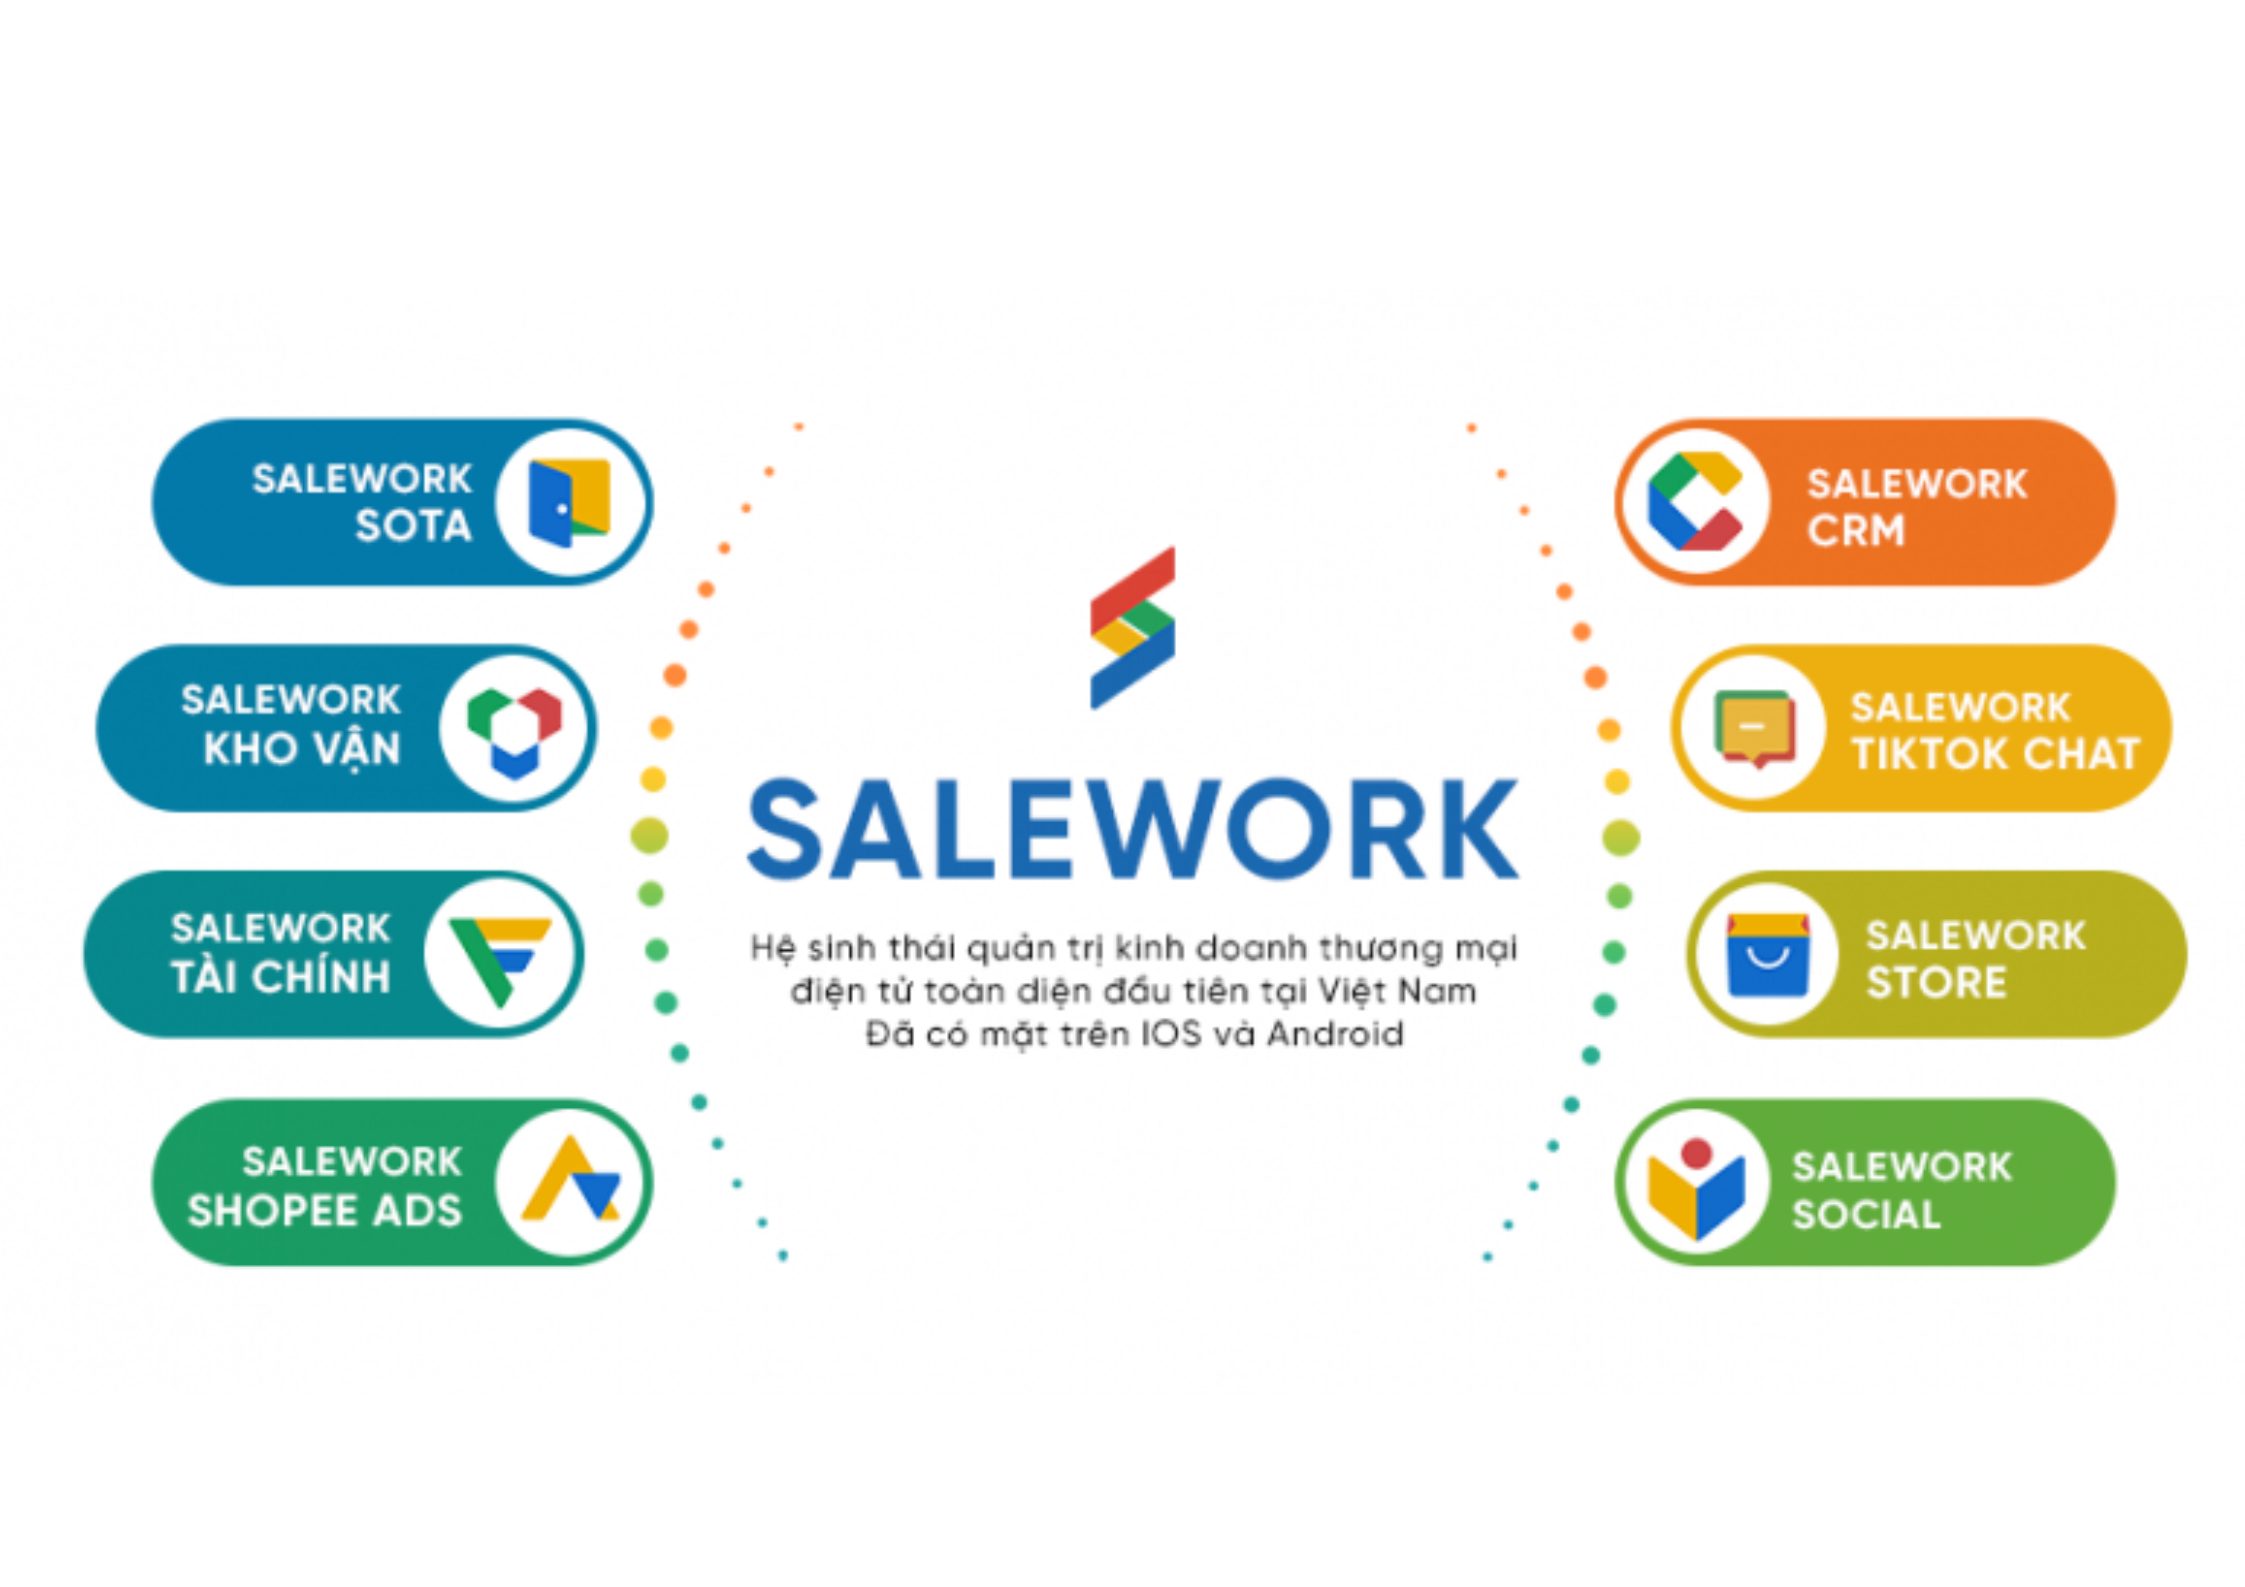 [Baodansinh.vn] Tối ưu hiệu quả kinh doanh với phần mềm quản lý bán hàng online Salework - 26